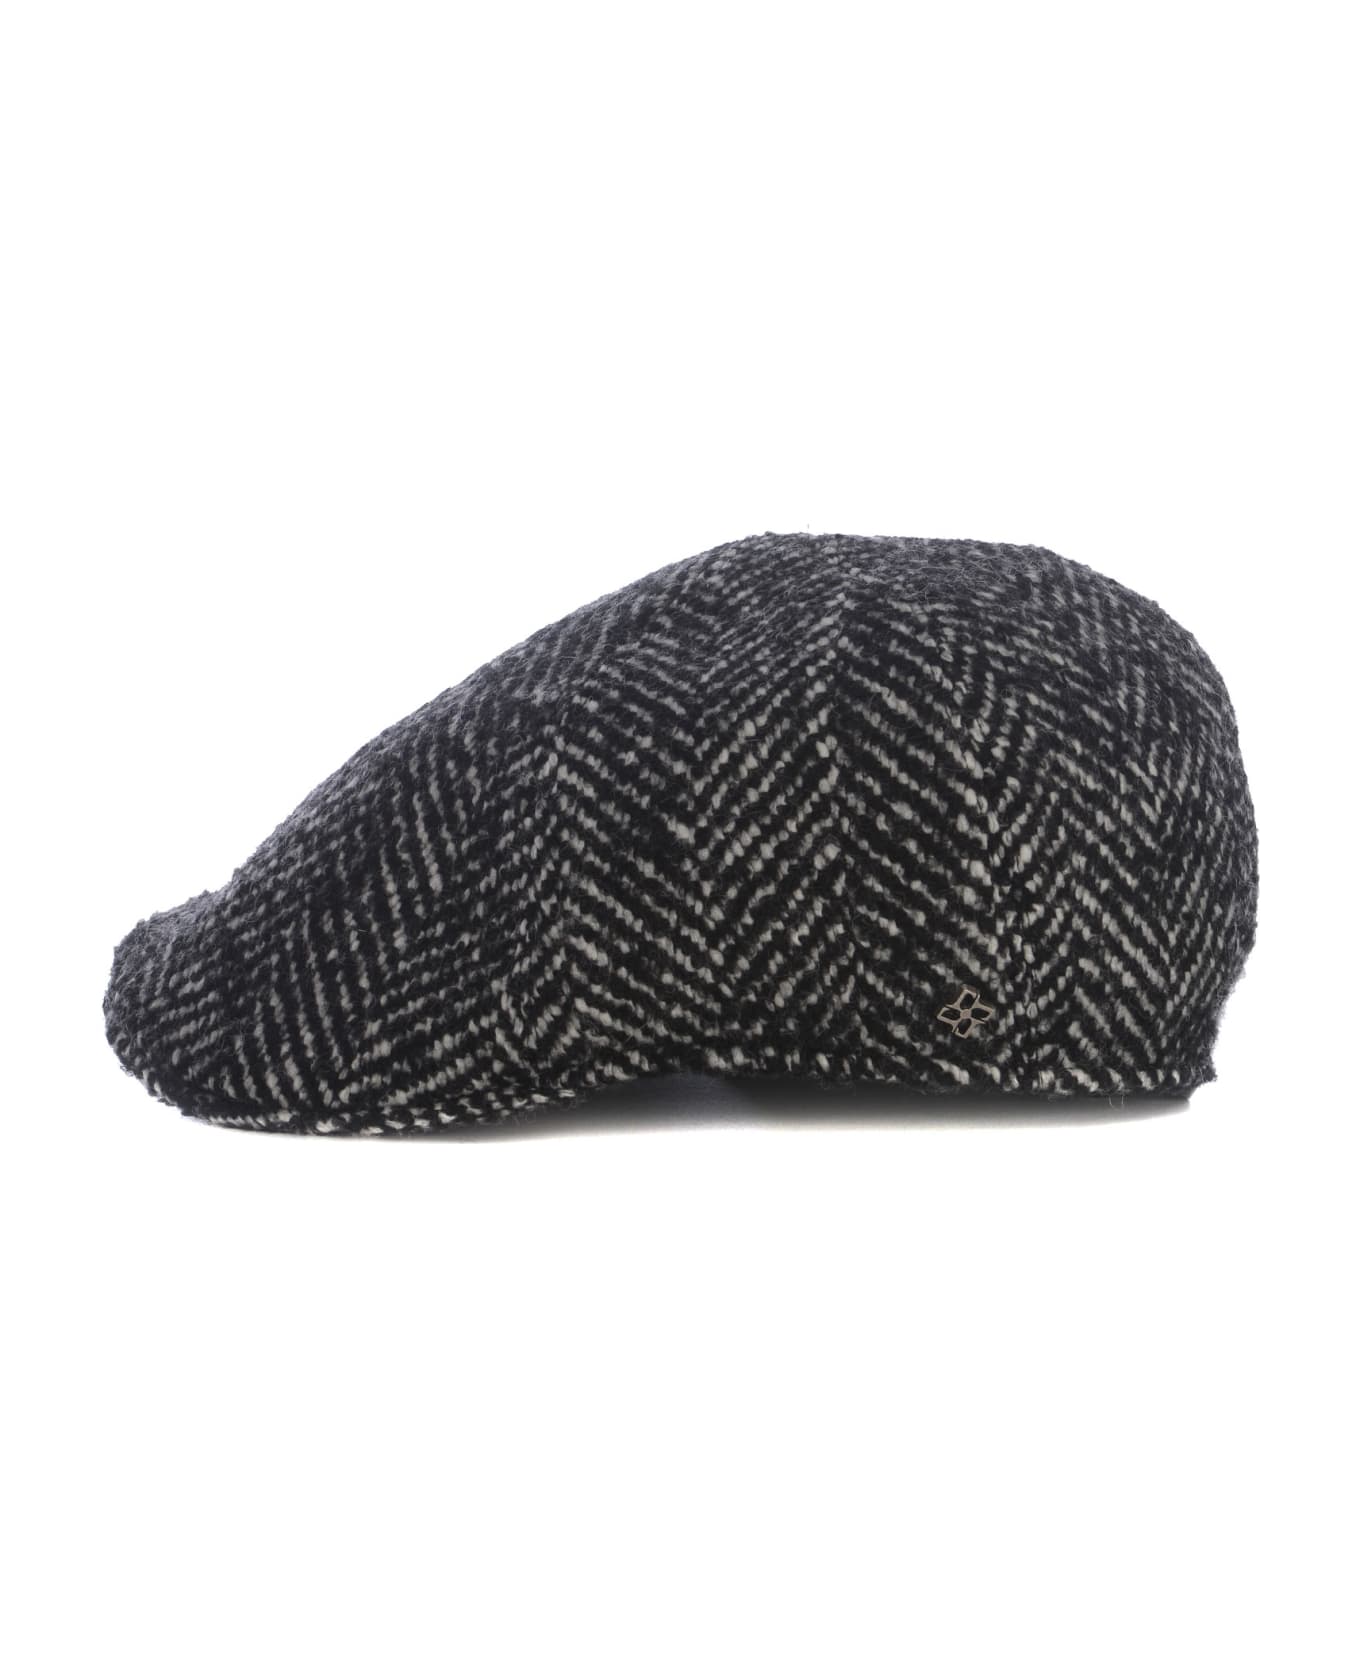 Tagliatore Cap Tagliatore In Wool - Nero 帽子